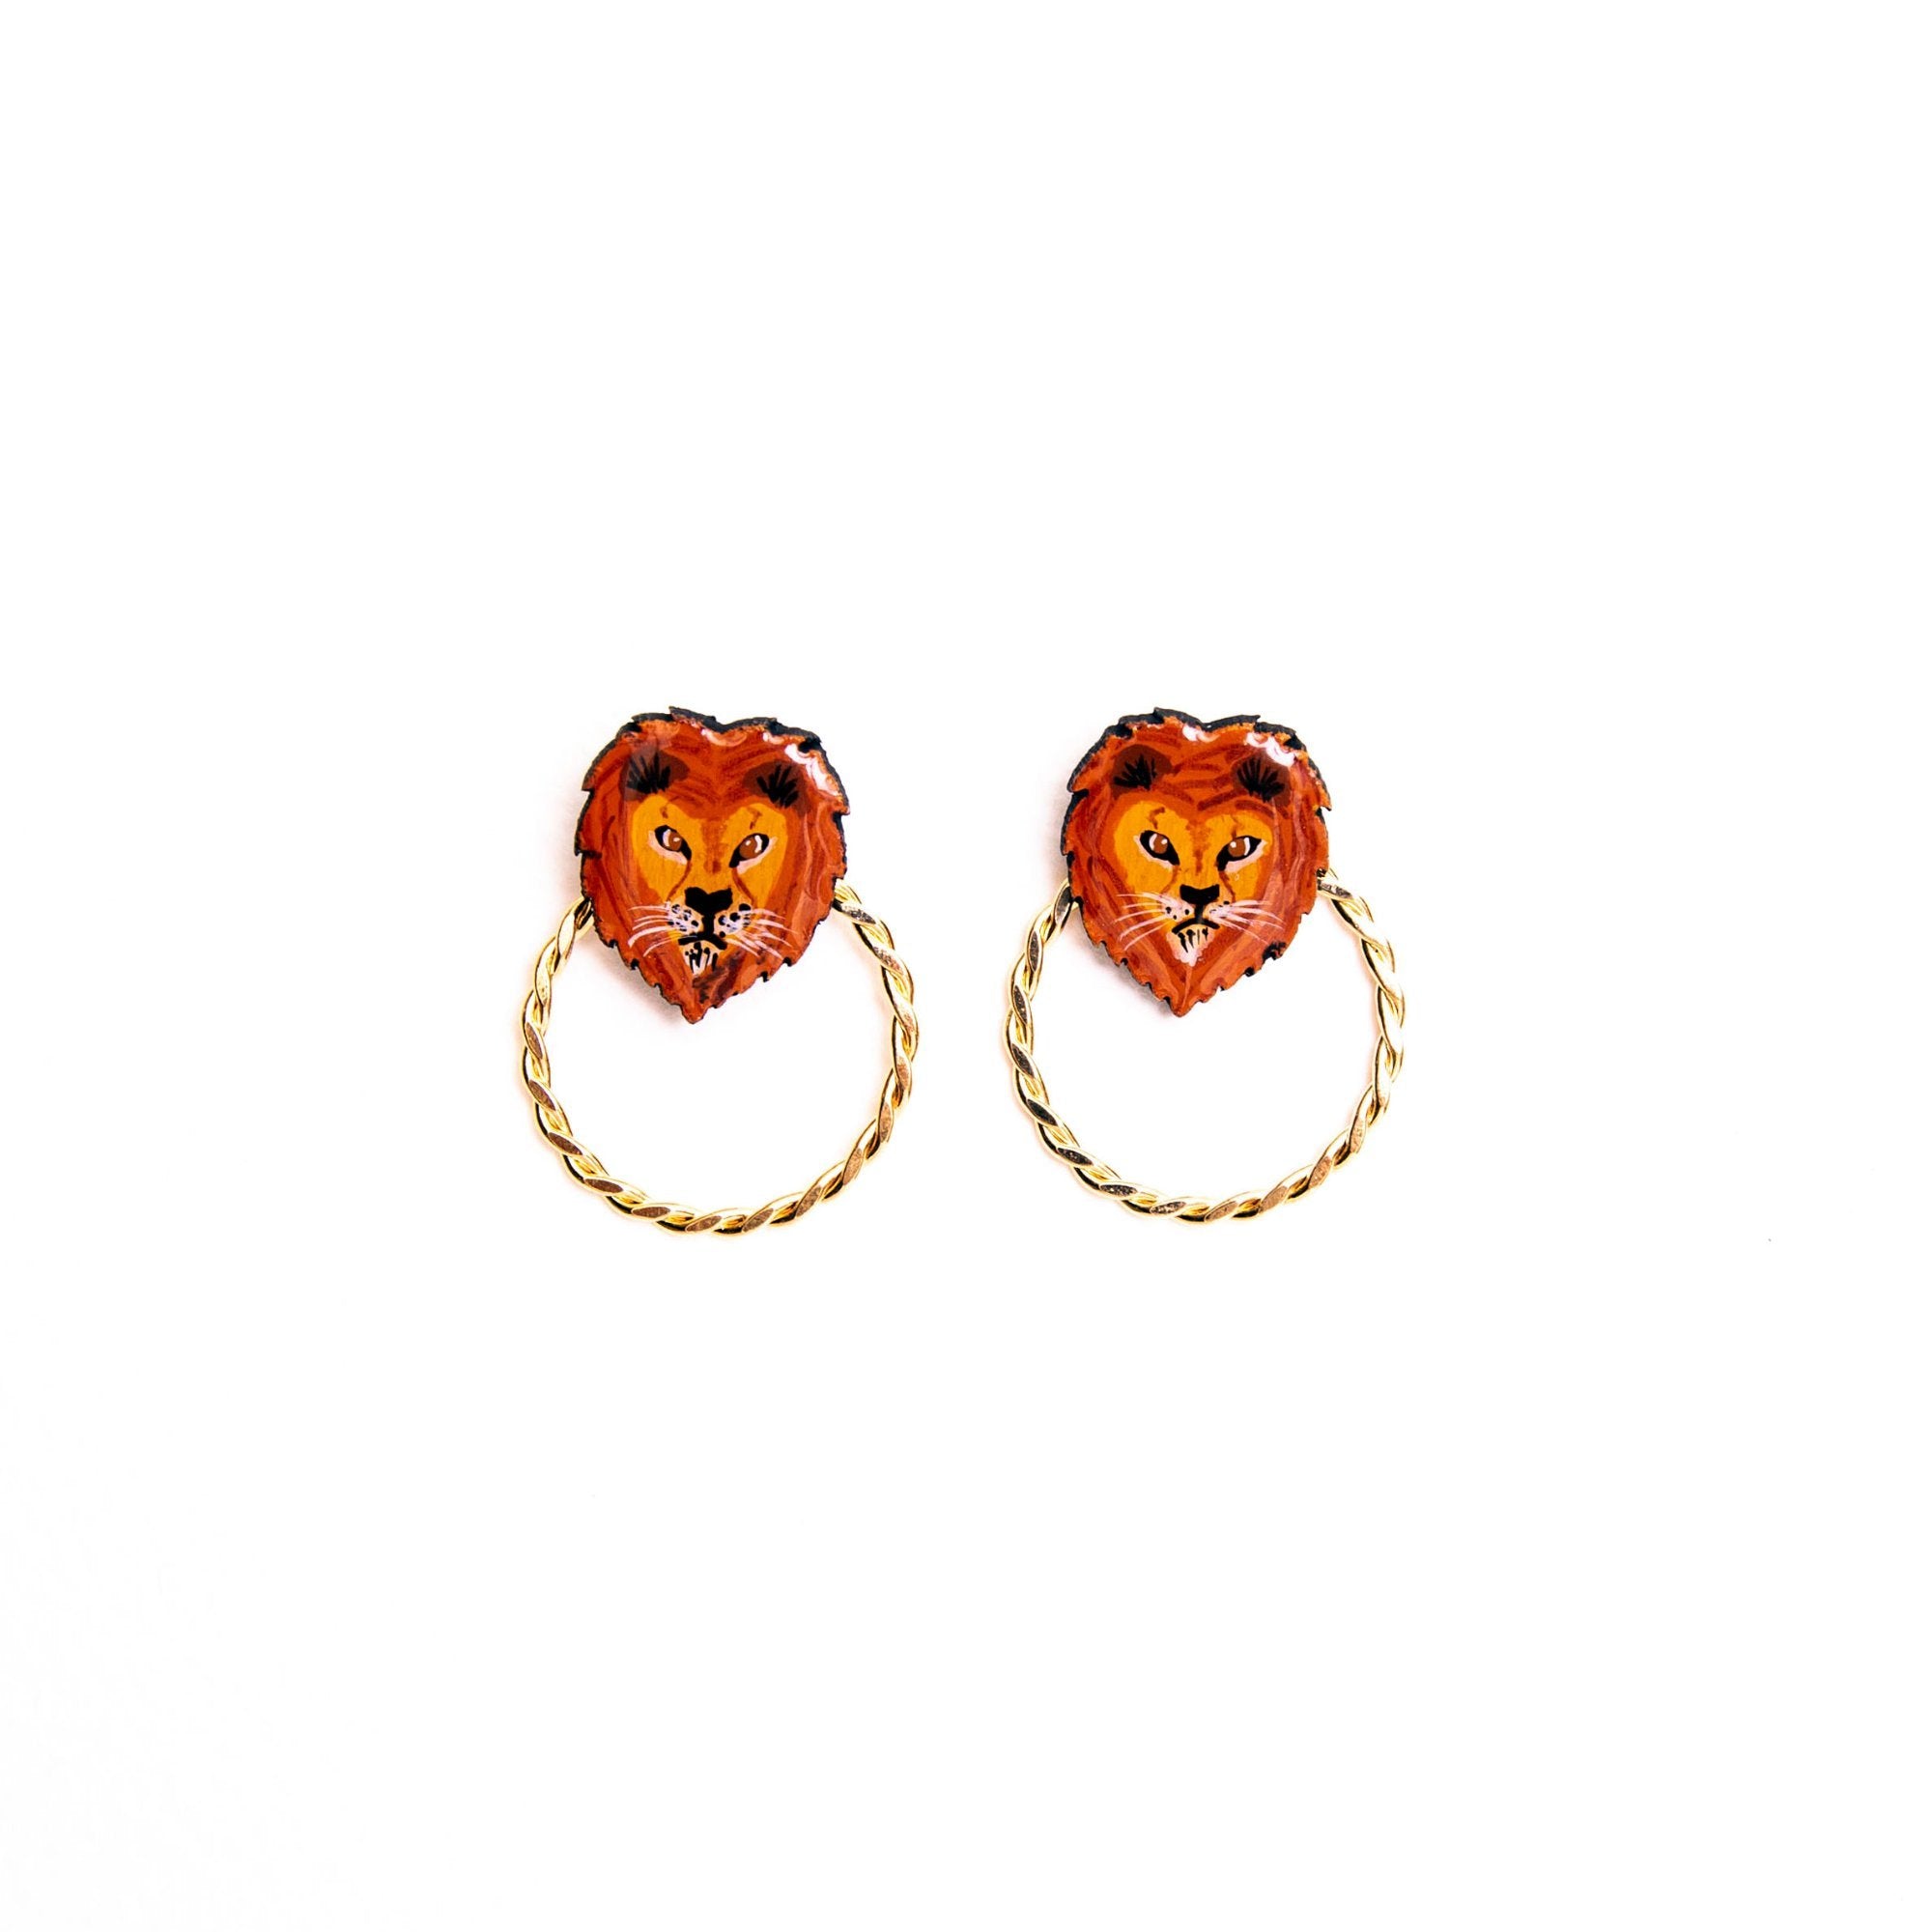 Lion Wood Stud Earrings with gold hoop